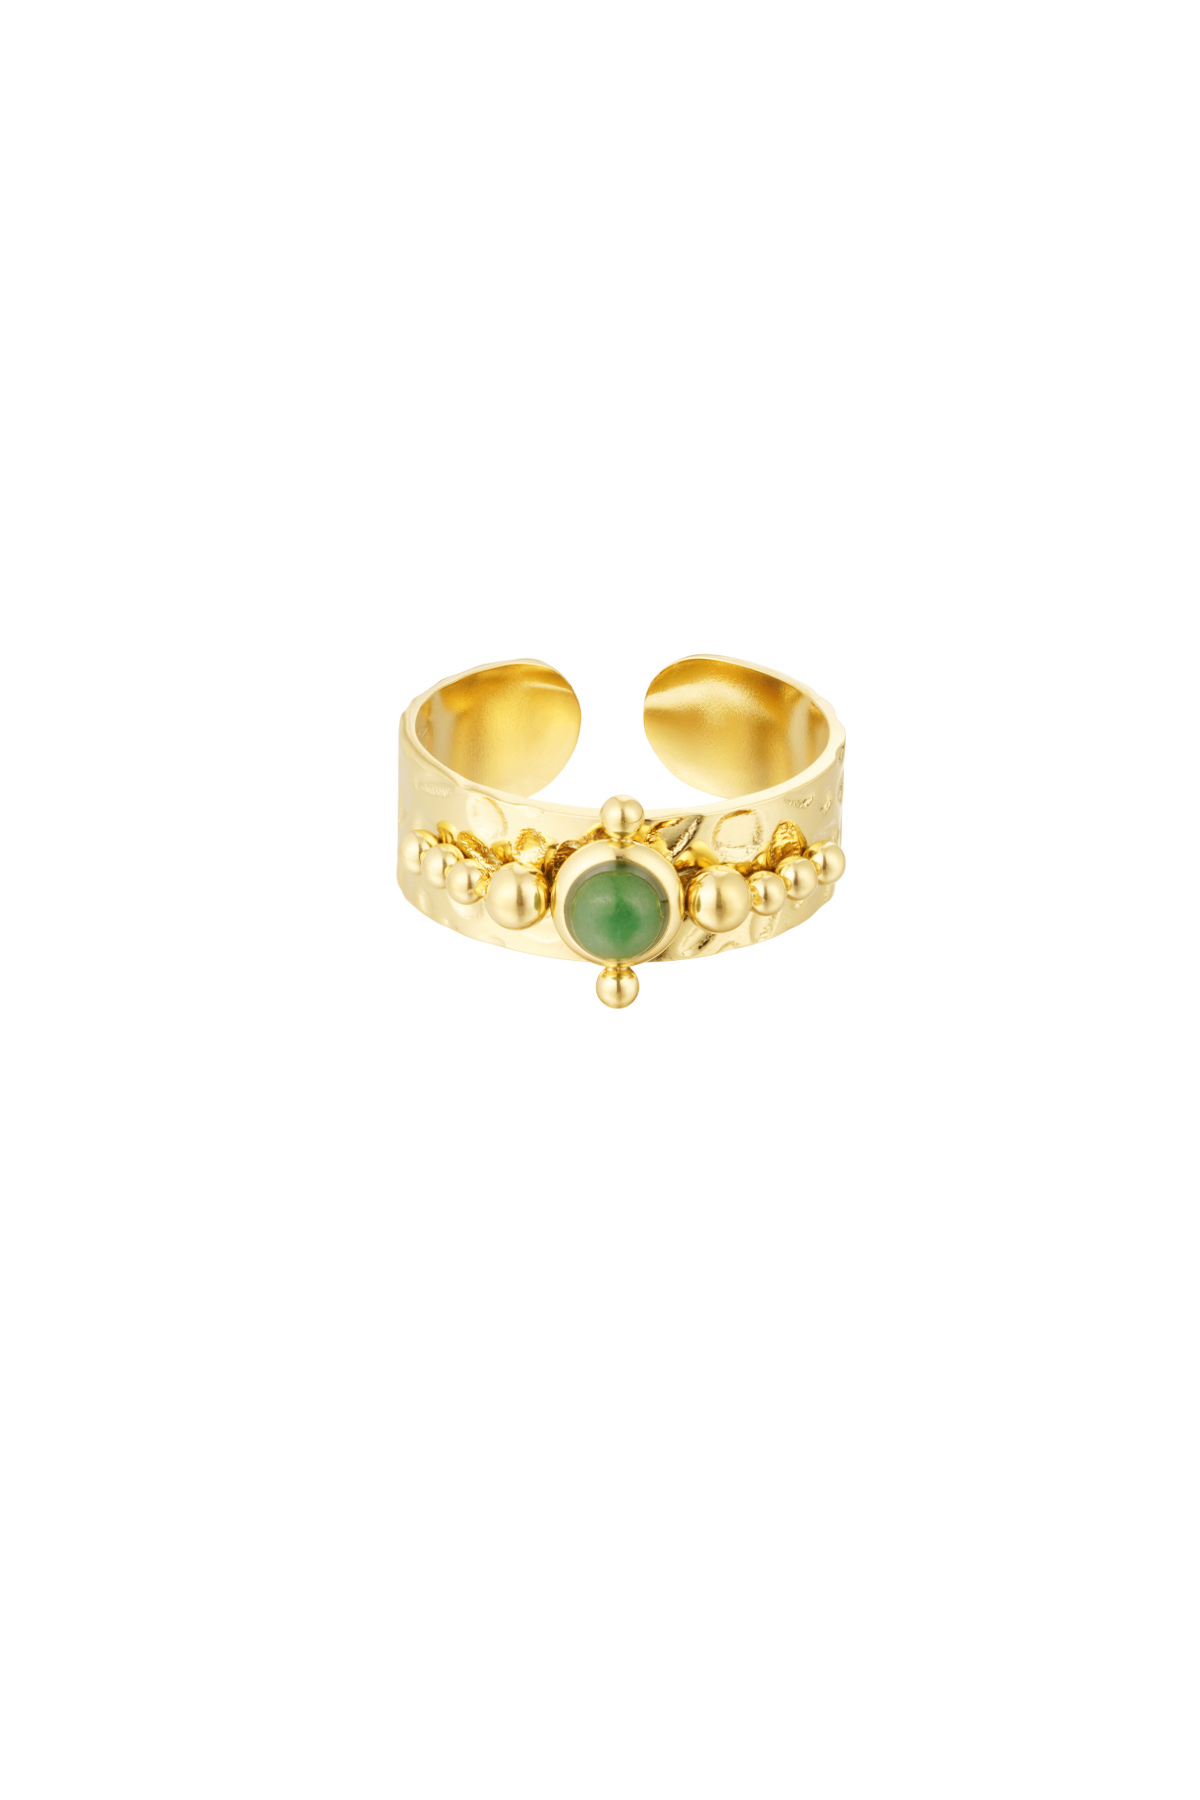 Ring steen met versiersel - goud/groen